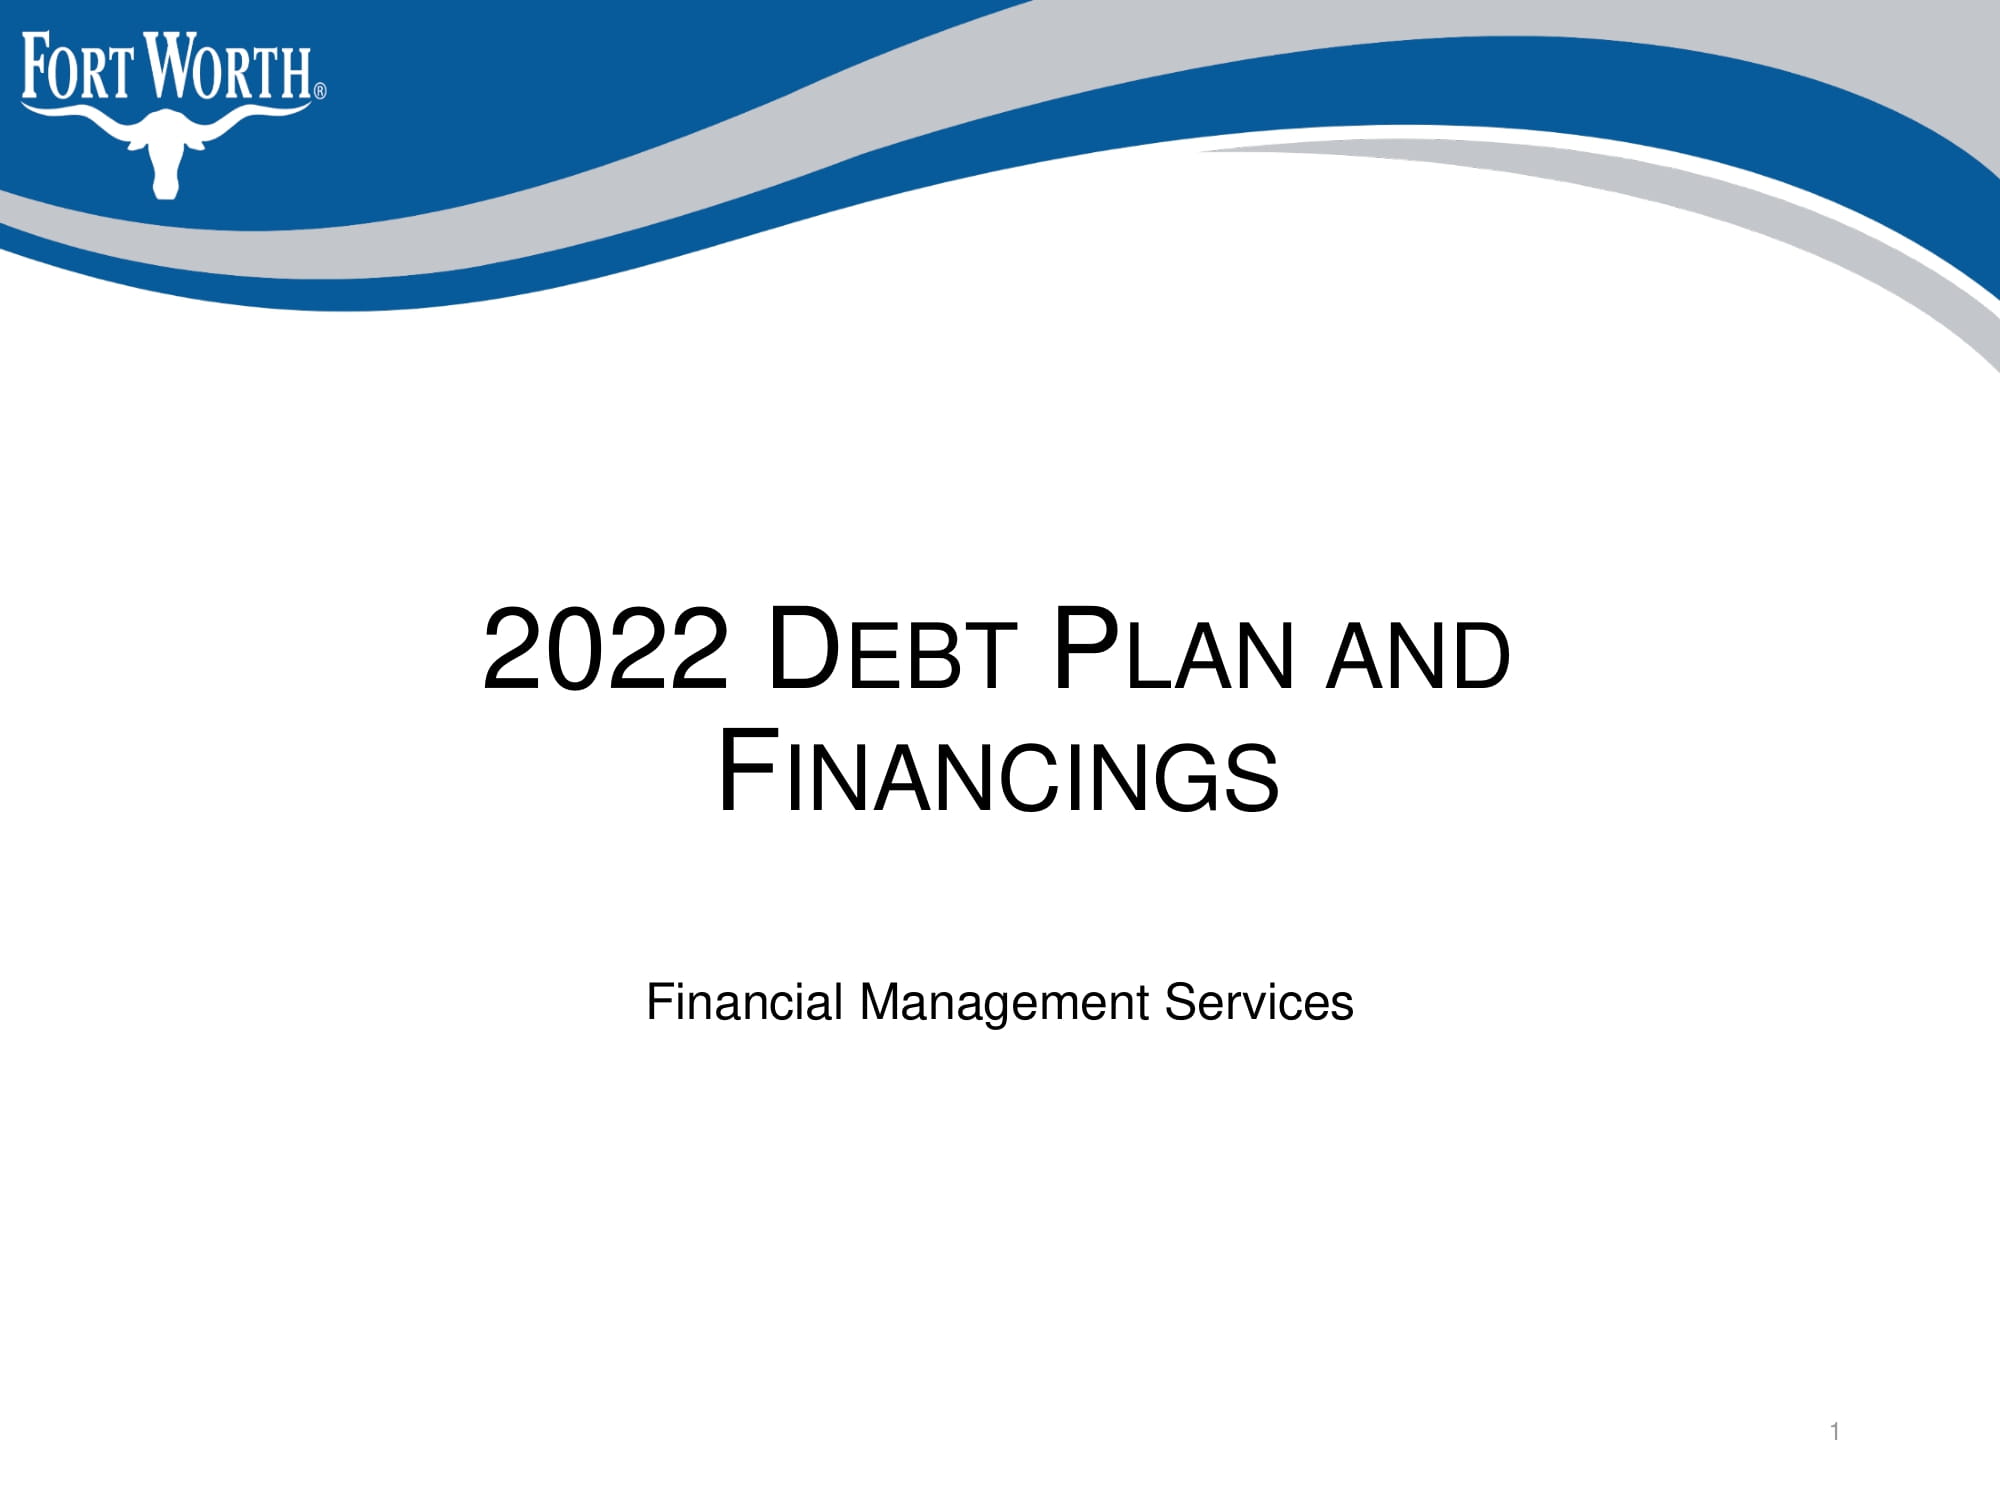 2022 Debt Plan and Financings